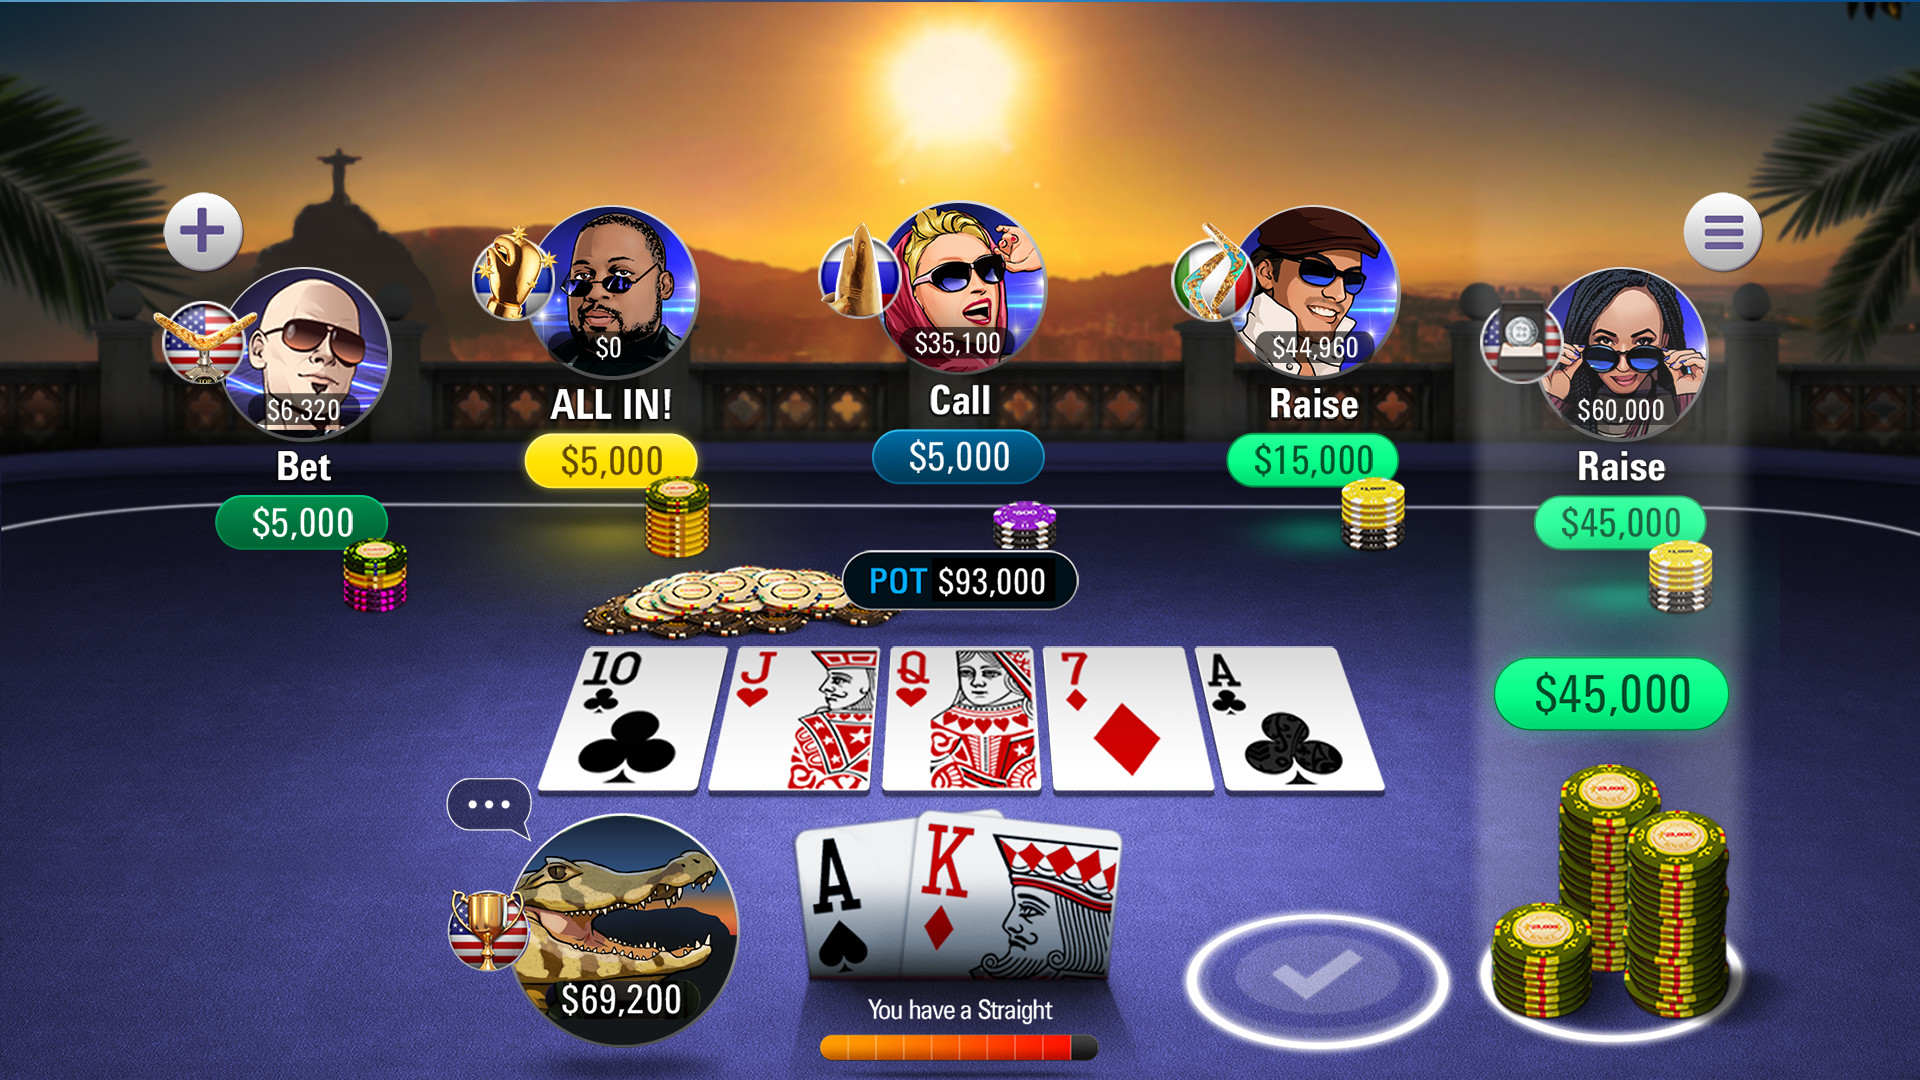 Джекпот покер казино онлайн играть бесплатно без регистрации с бонусами без депозита